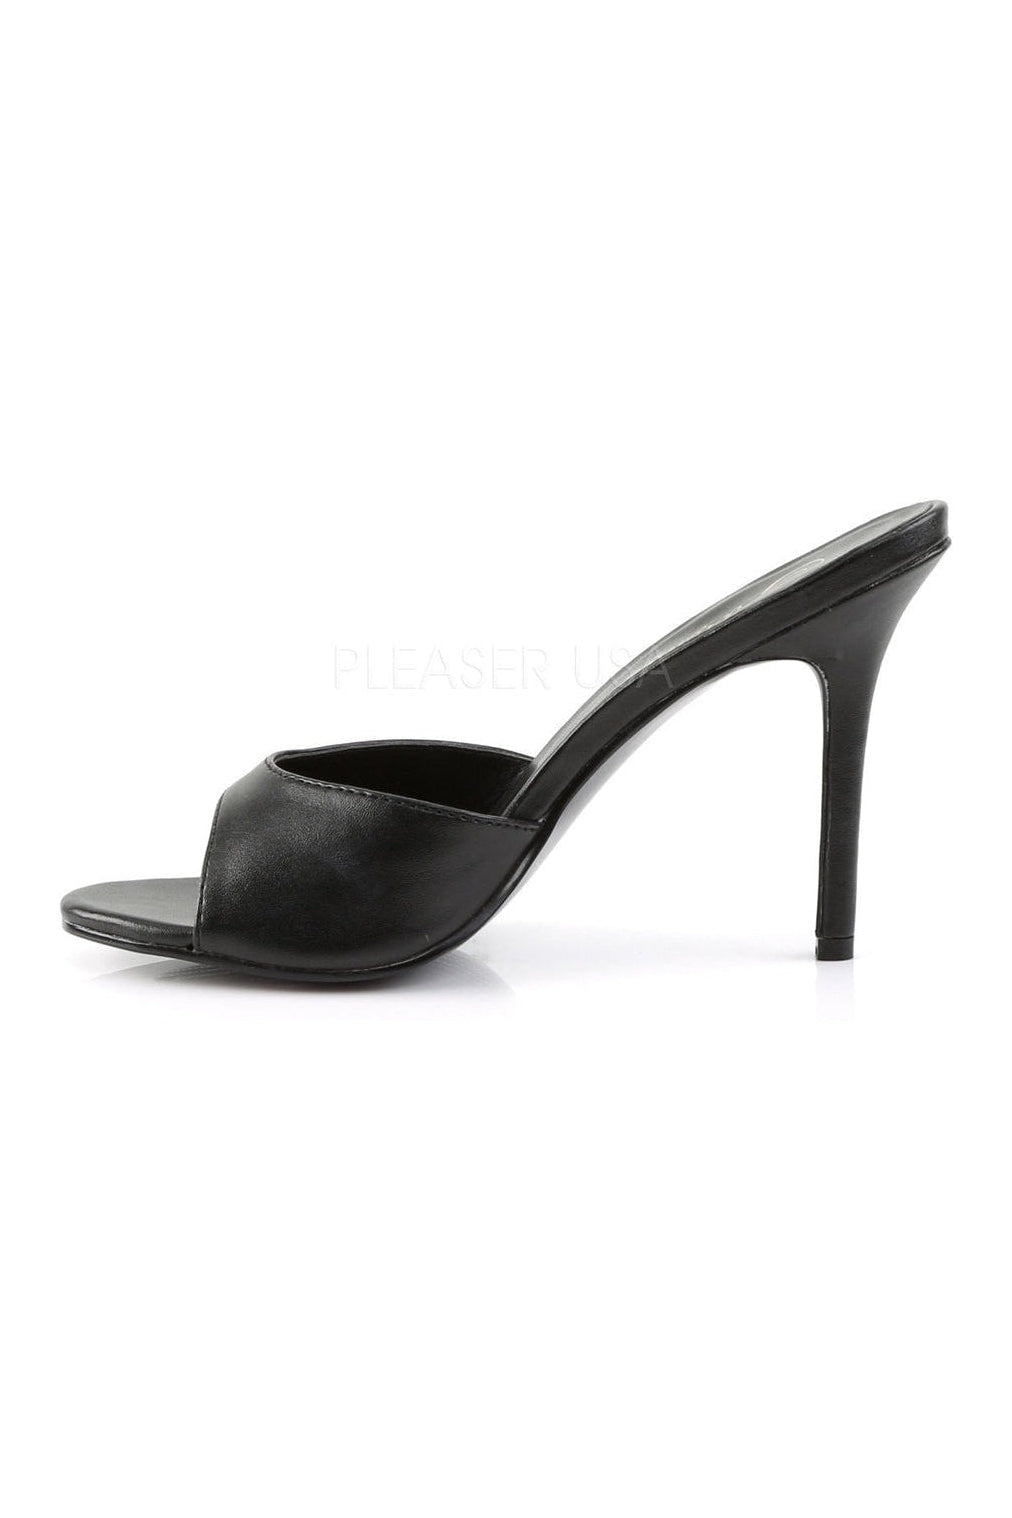 black slides with heel